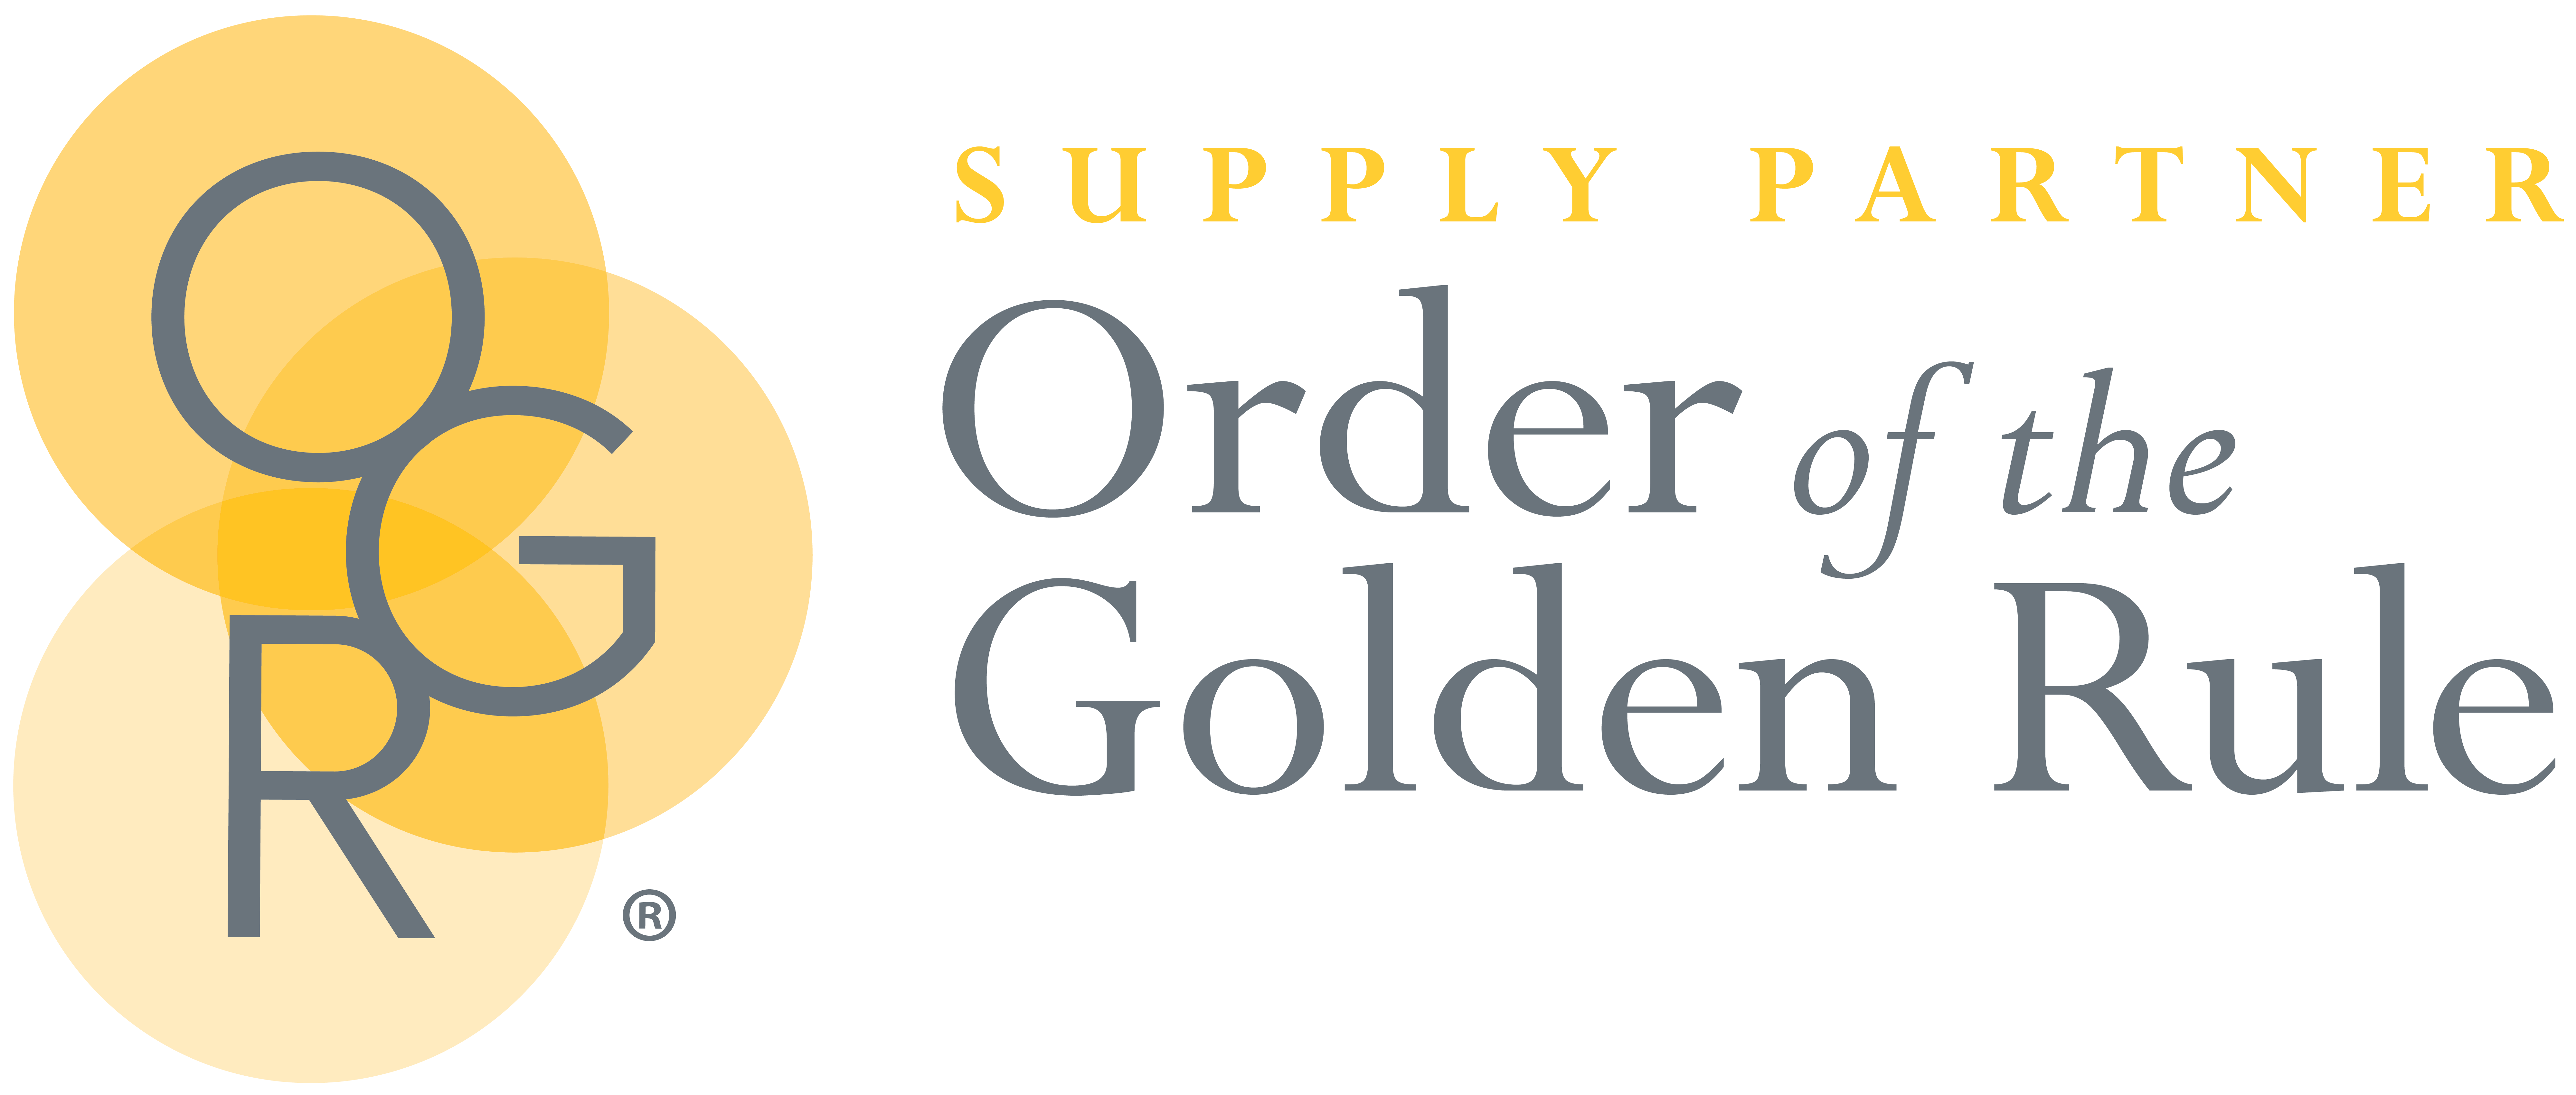 OGR Supply Partner logo 2021